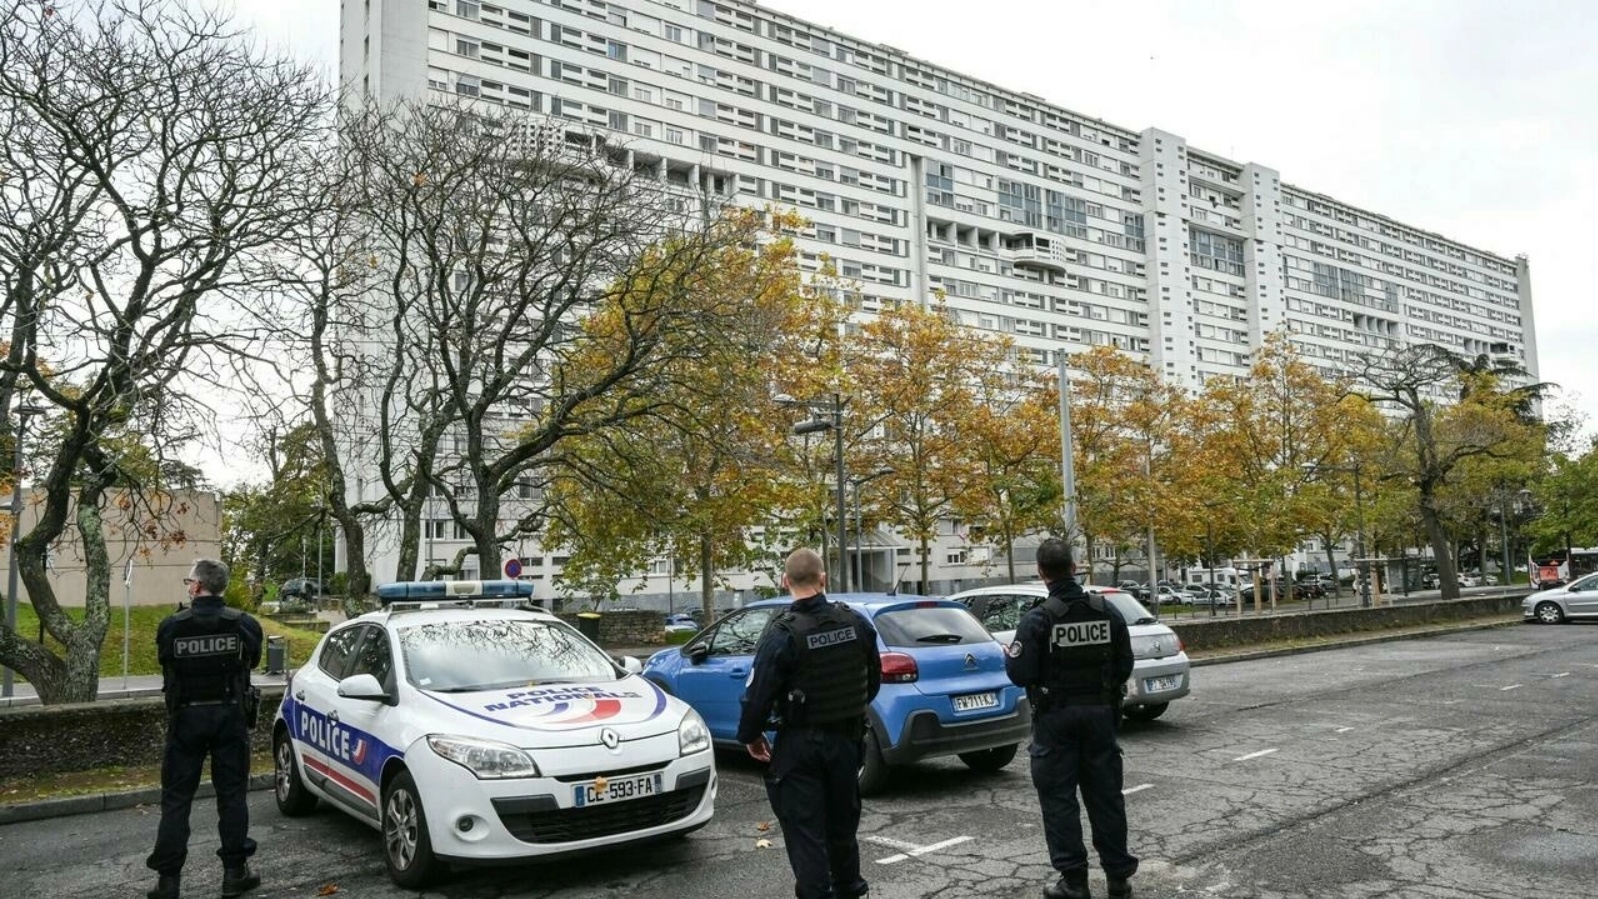 ضباط الشرطة الفرنسية يقفون بالقرب من مبنى في منطقة Duchere في مدينة ليون، في 26 أكتوبر 2021